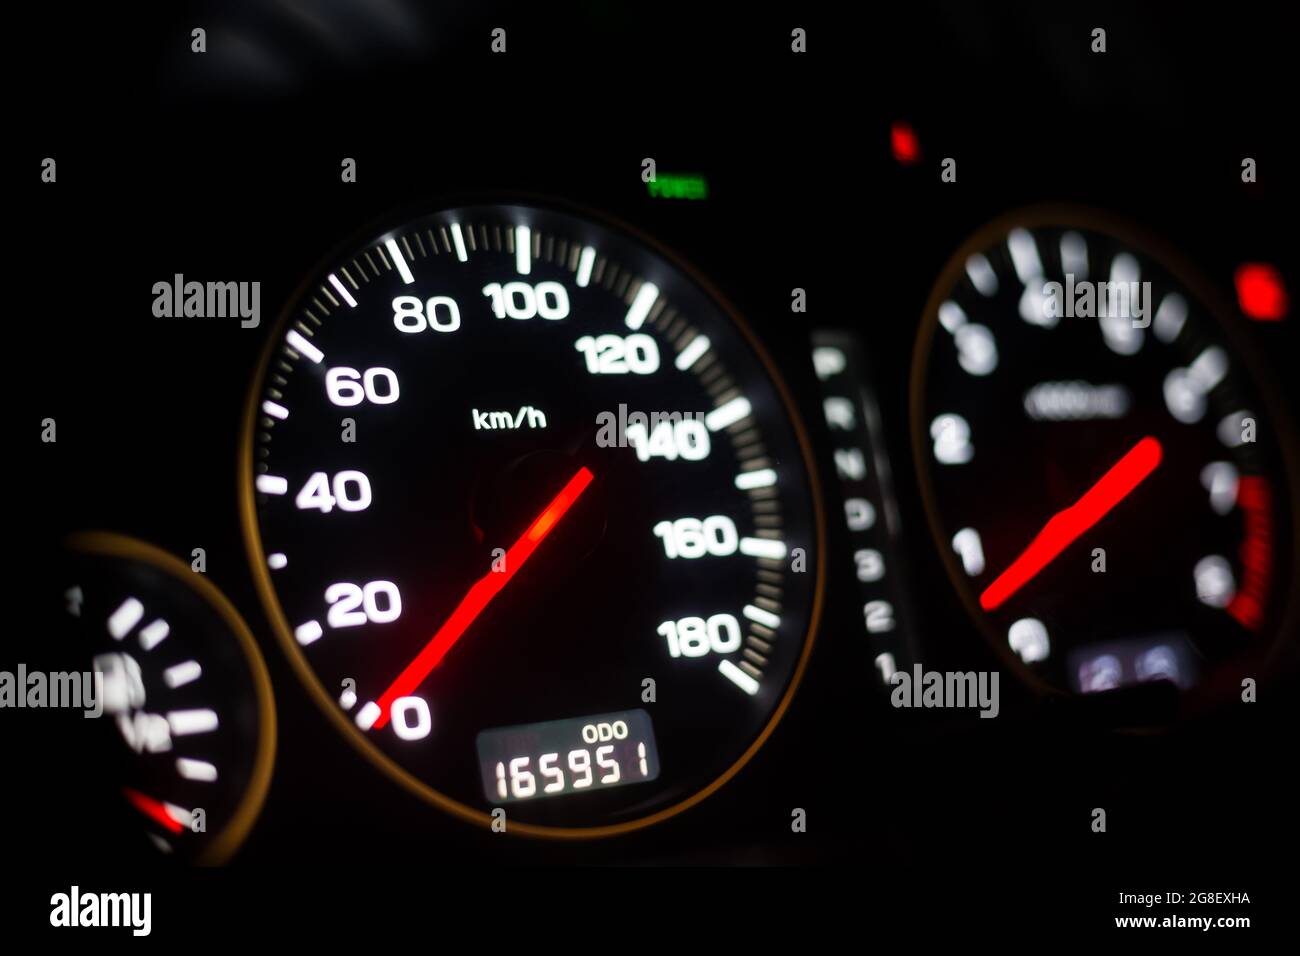 Auto Armaturenbrett wuth rote Hintergrundbeleuchtung: Kilometerzähler,  Tachometer, Drehzahlmesser, Kraftstoffstand, Wassertemperatur und mehr  Stockfotografie - Alamy